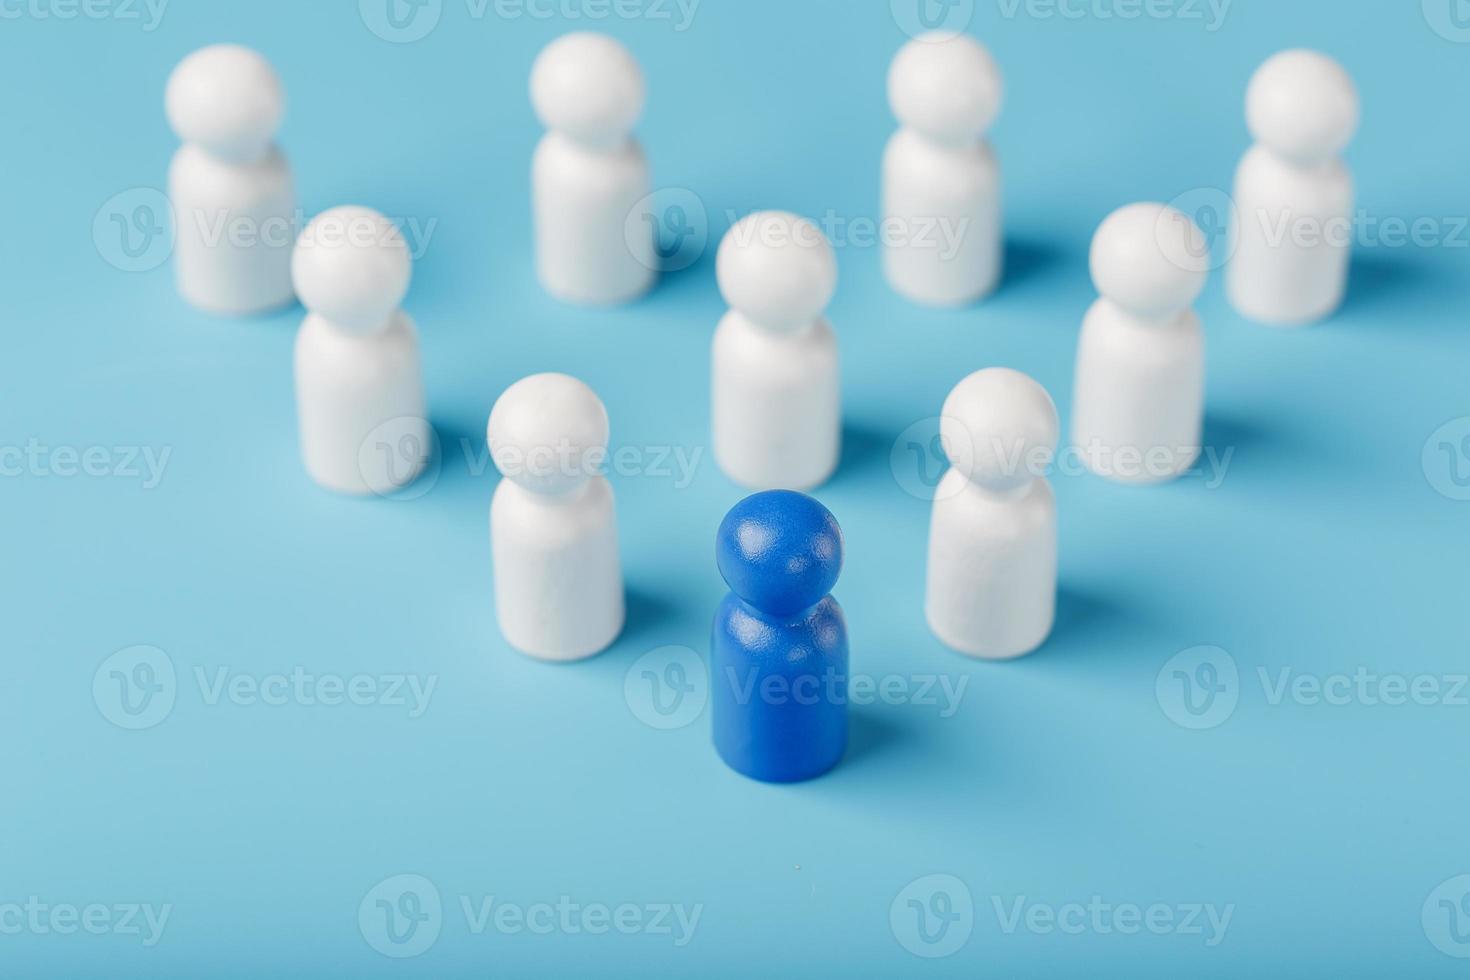 le leader en bleu dirige un groupe d'employés blancs vers la victoire, les rh, le recrutement du personnel. la notion de leadership. photo